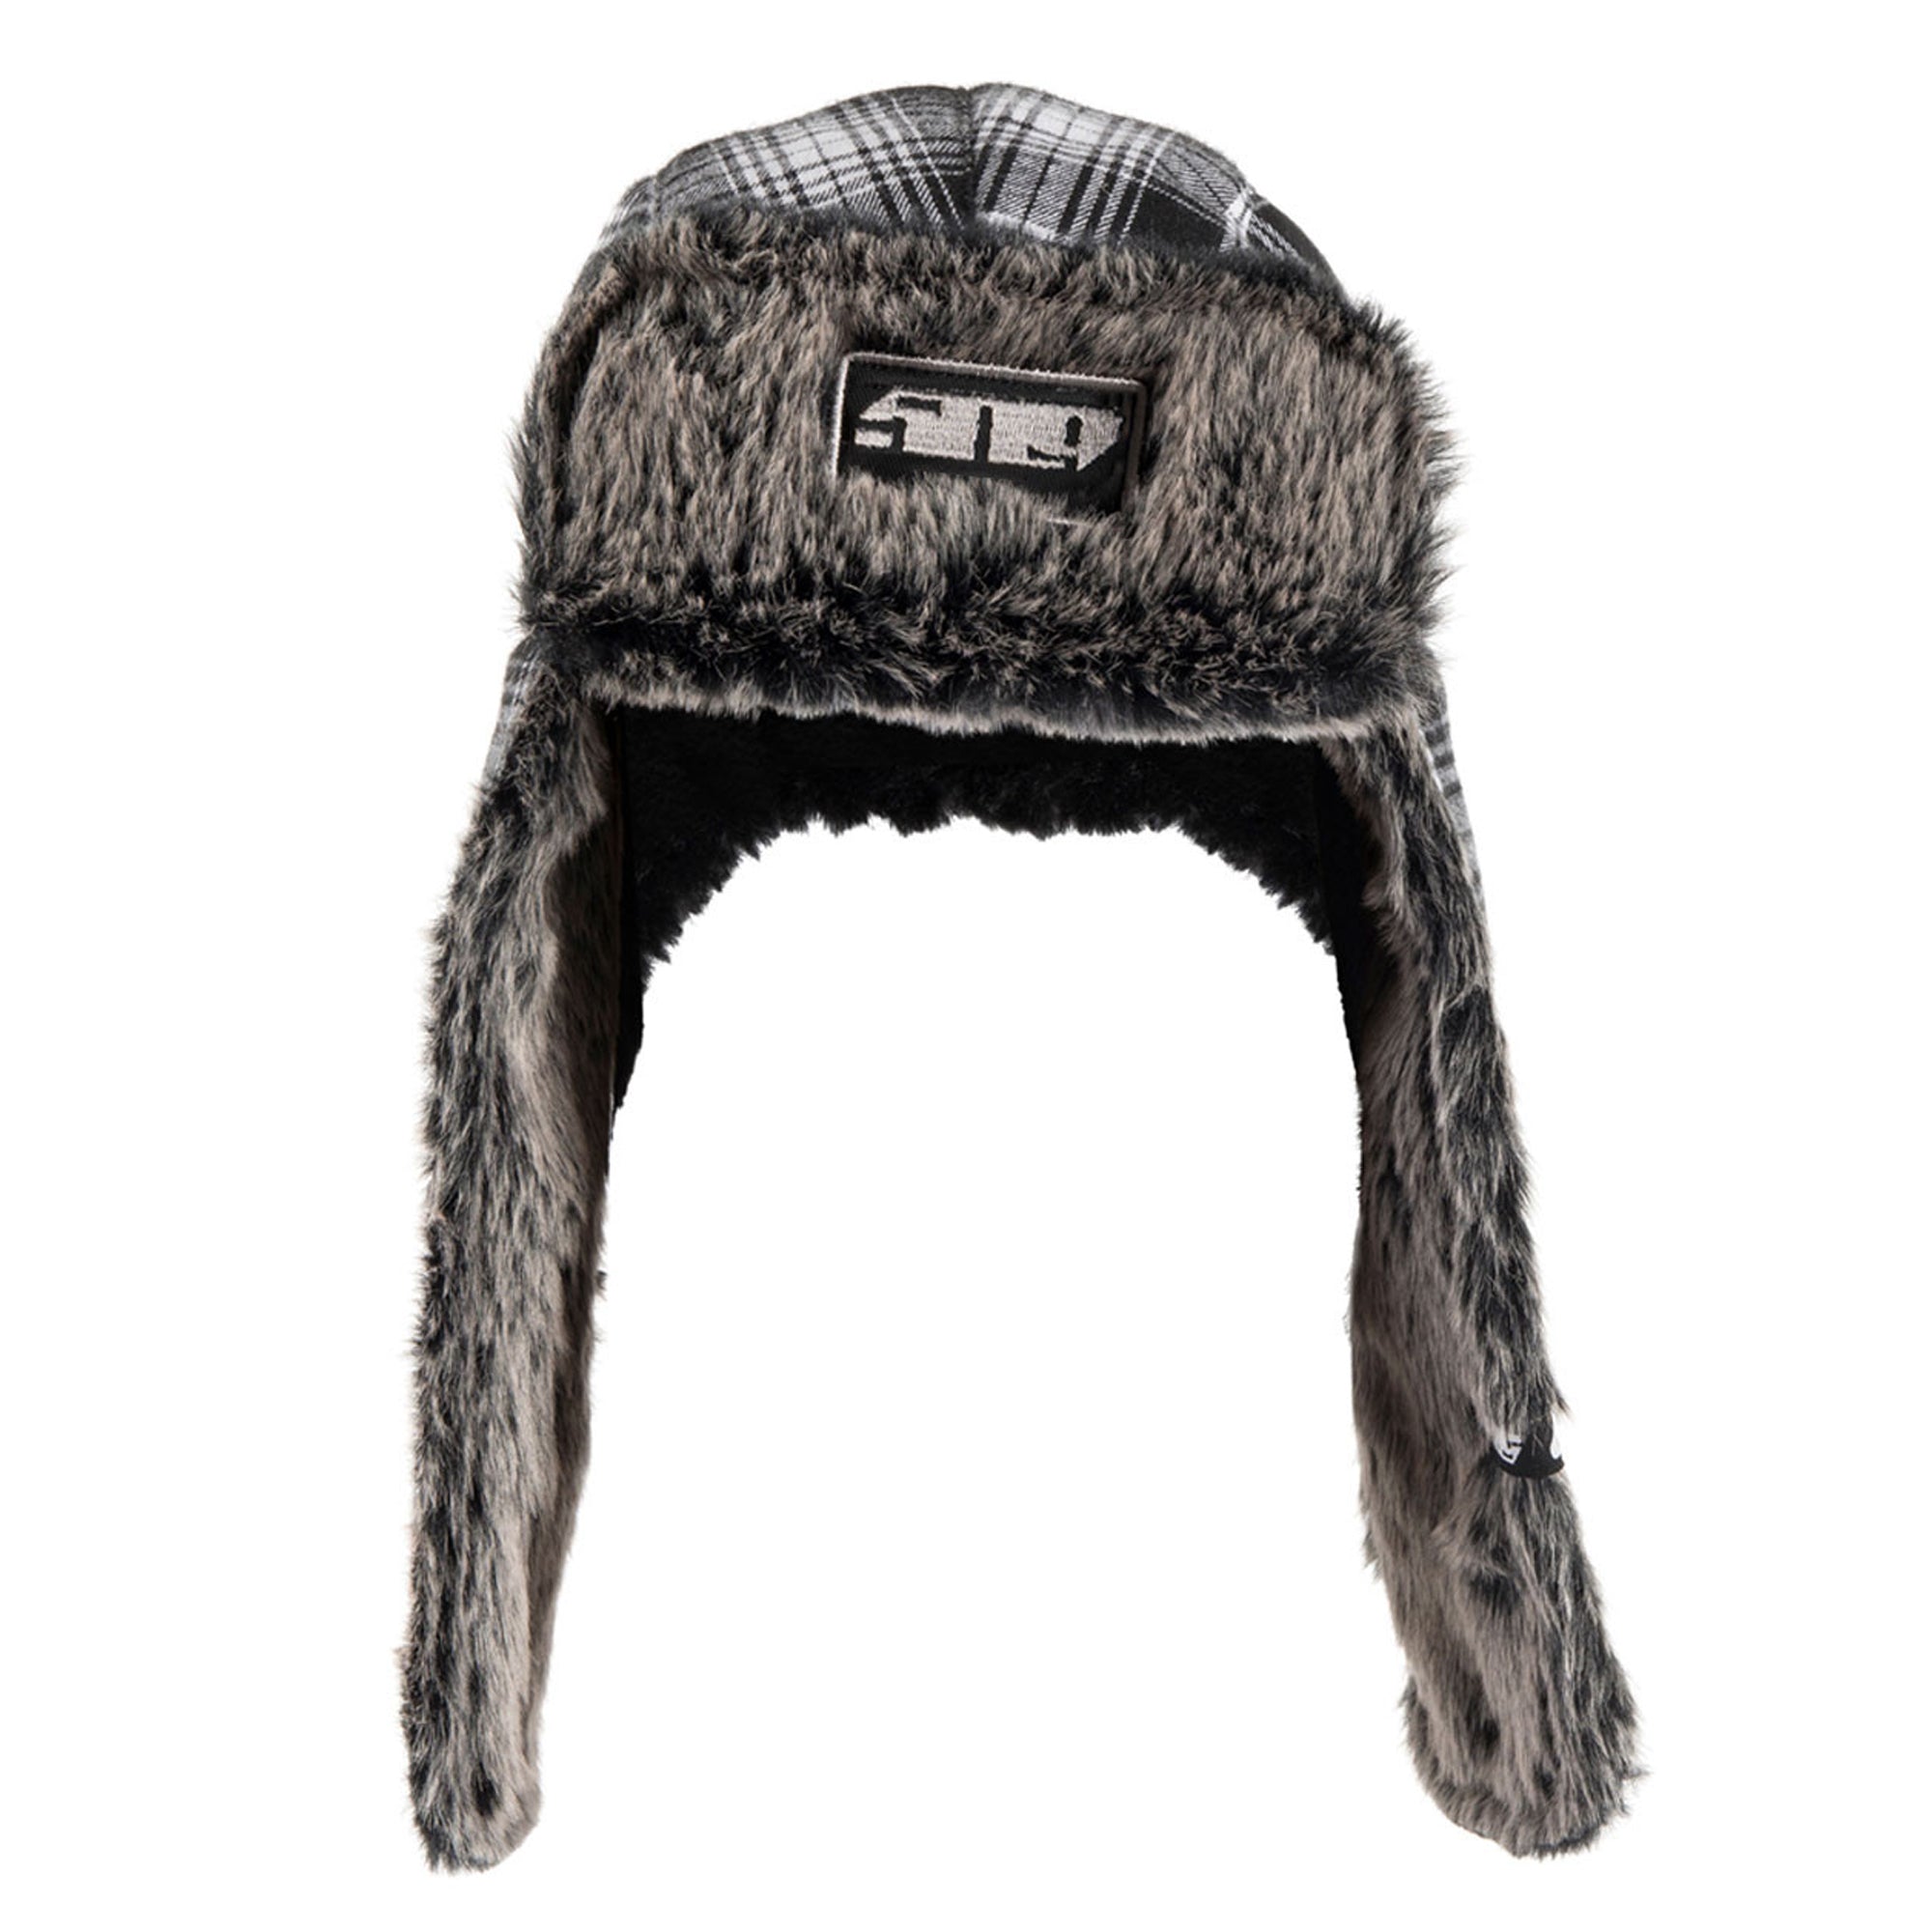 509  Trapper Hat Warm Long Faux Fur Earflaps Adjustable Snap Closure Winter Cap